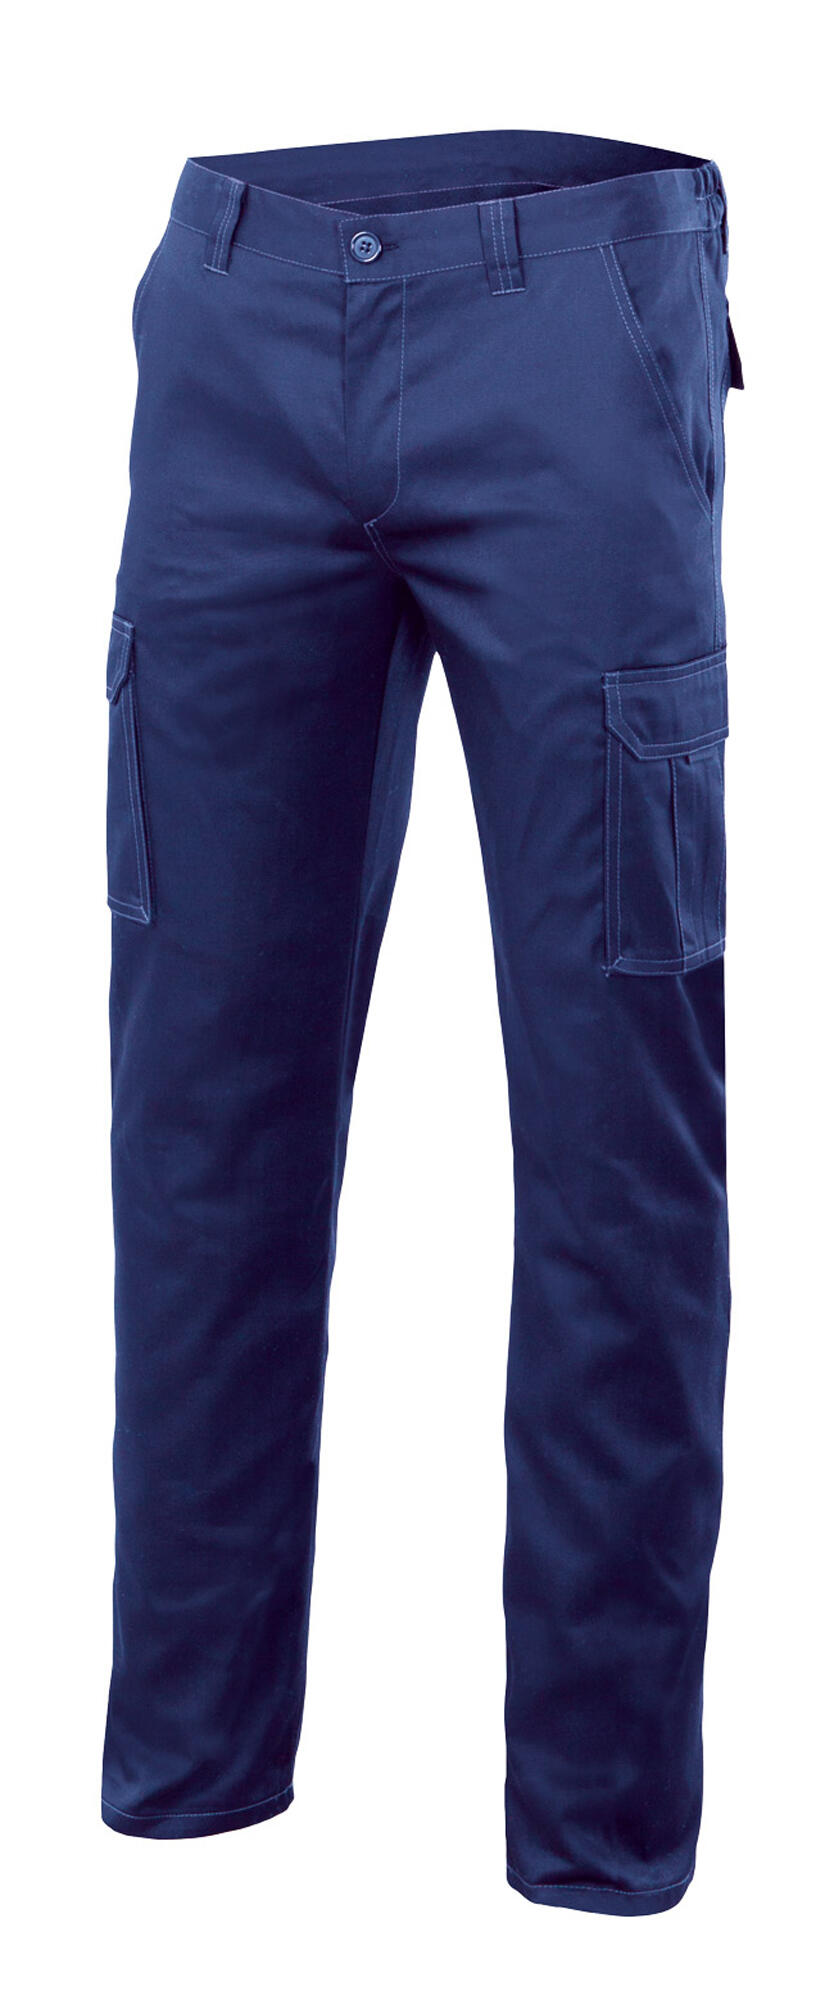 Pantalon de trabajo multibolsillo stretch azulina t52